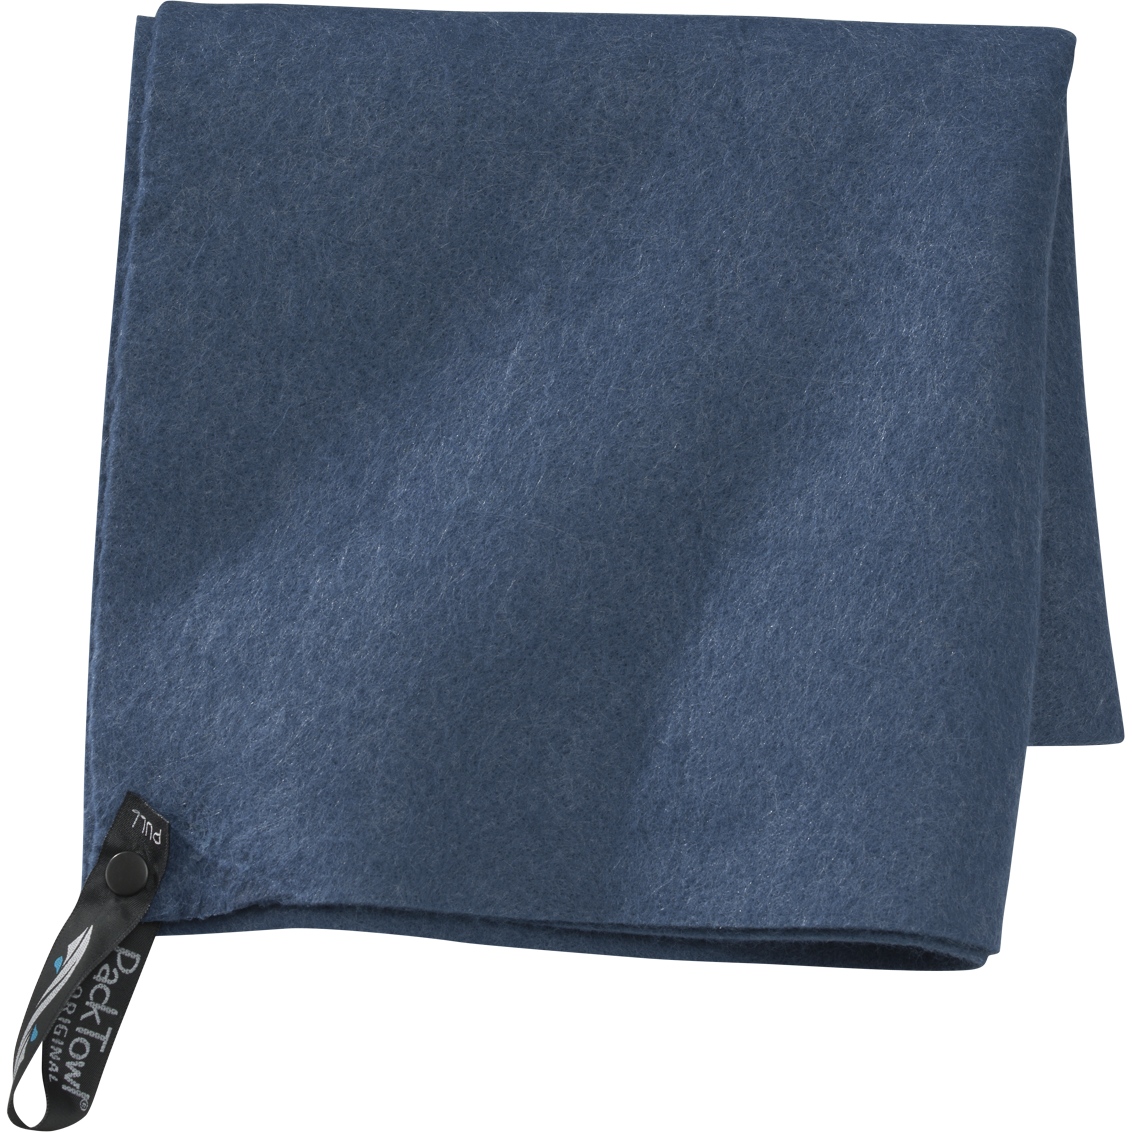 Productfoto van PackTowl Original M Handdoek - blauw